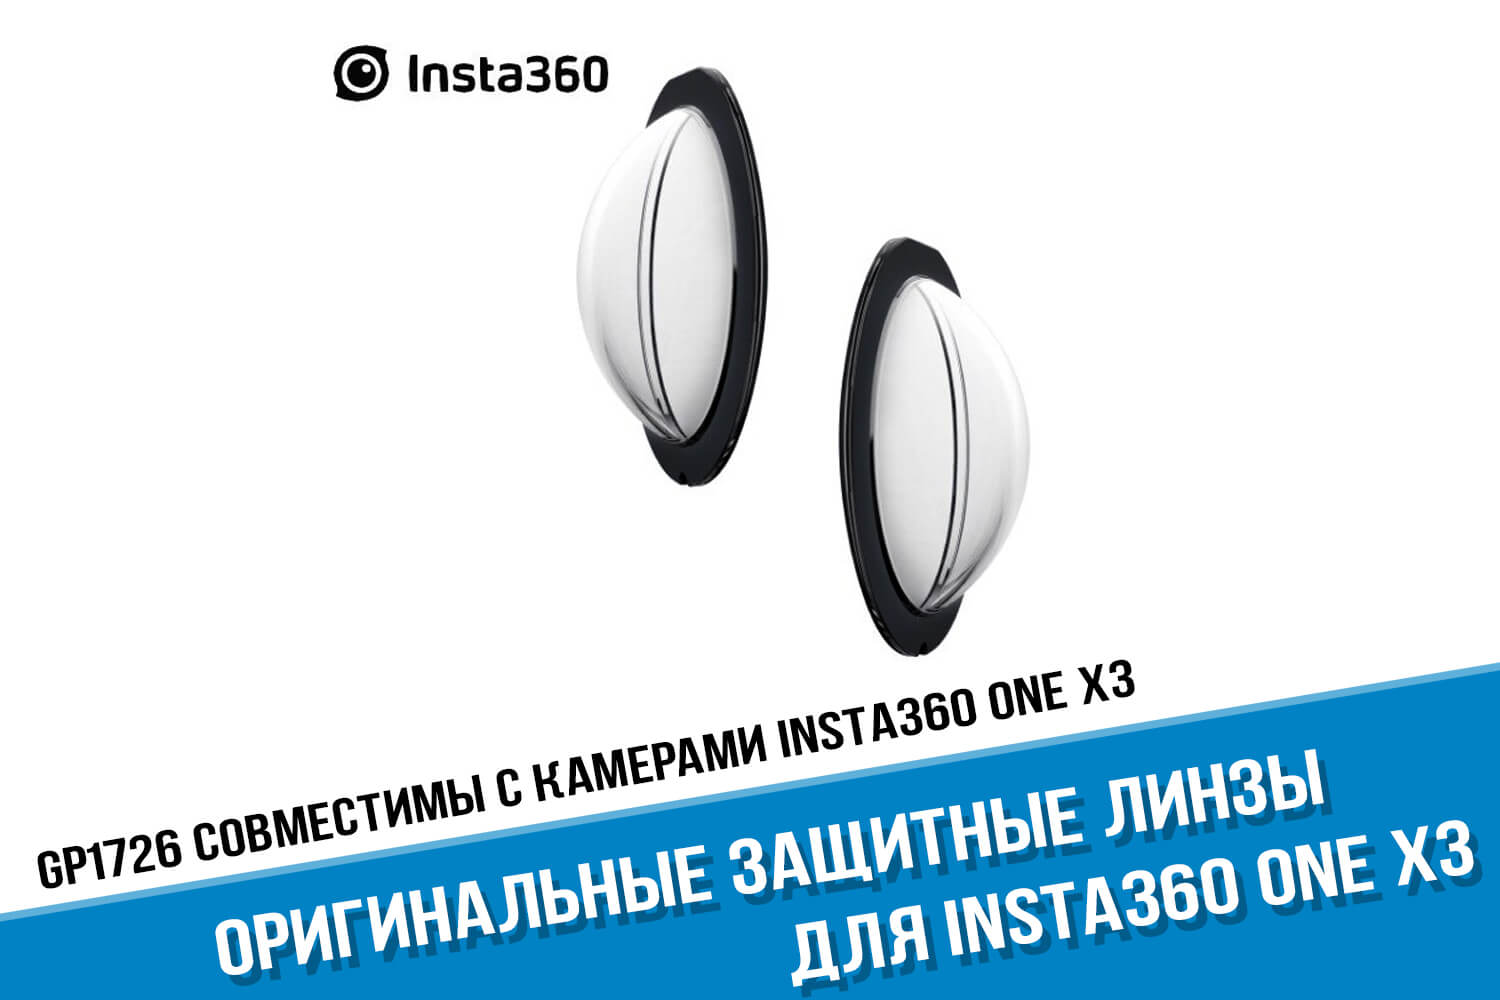 Оригинальные защитные линзы экшн-камеры Insta360 One X3